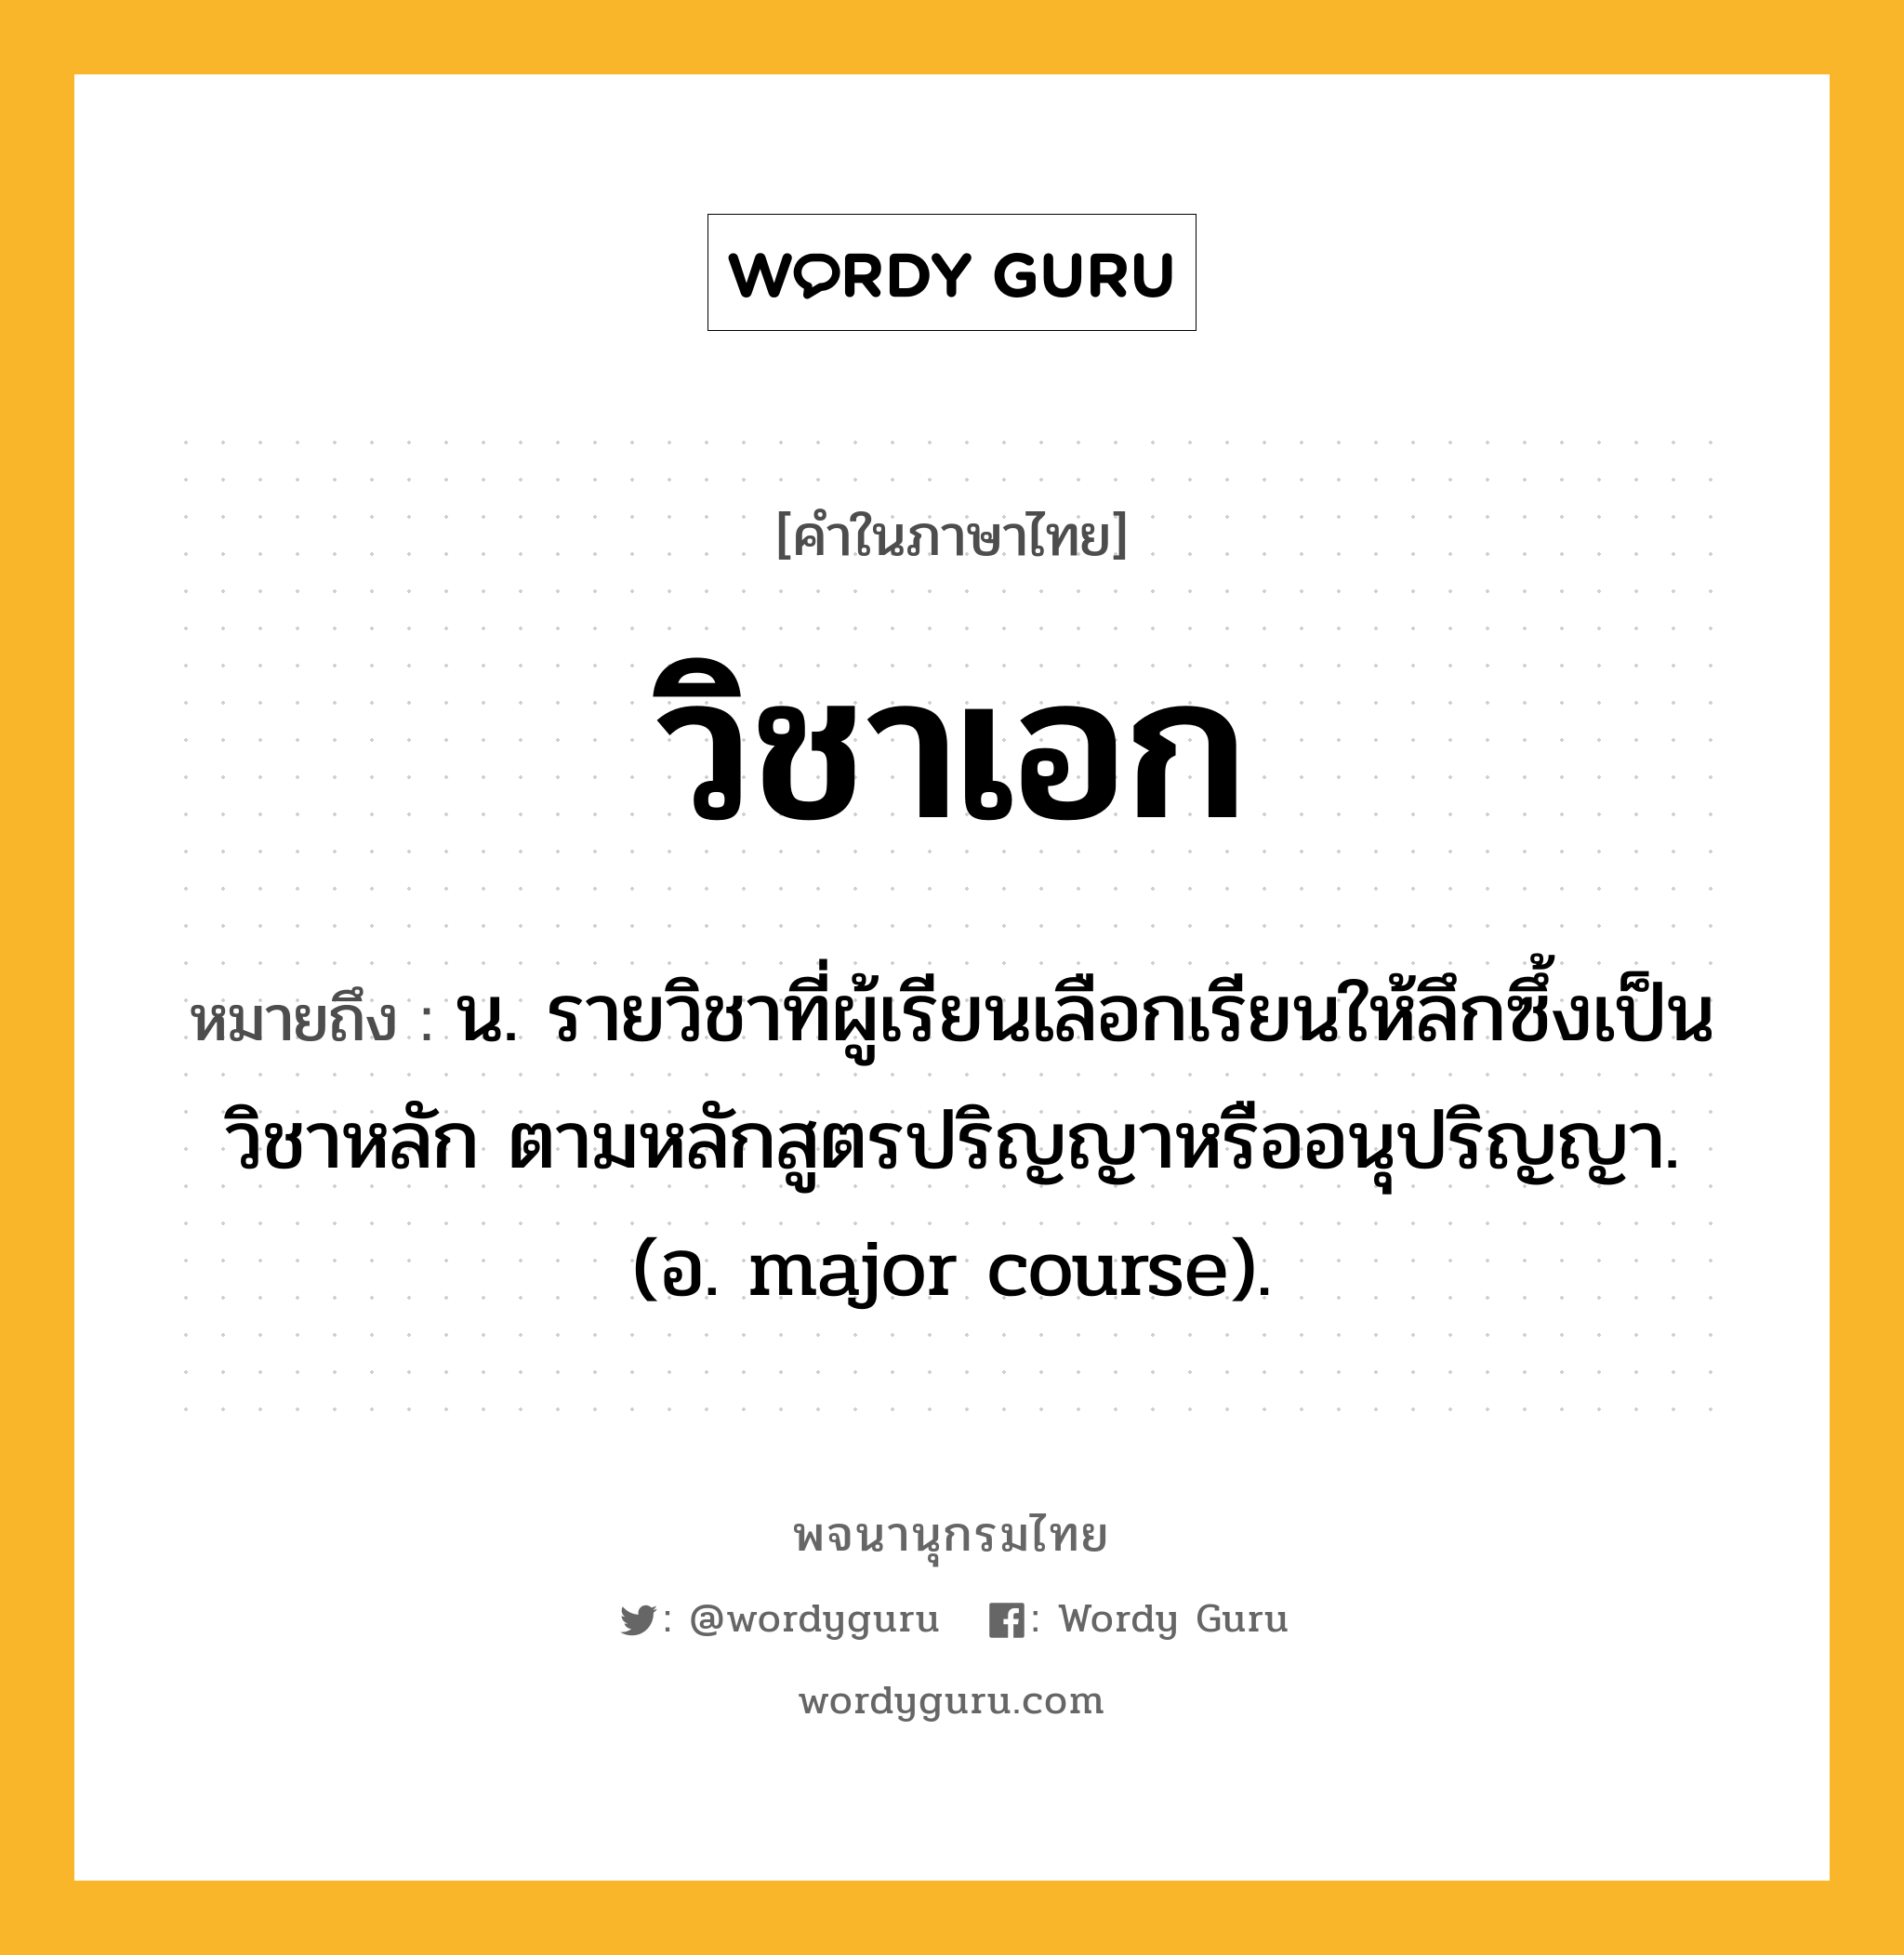 วิชาเอก หมายถึงอะไร?, คำในภาษาไทย วิชาเอก หมายถึง น. รายวิชาที่ผู้เรียนเลือกเรียนให้ลึกซึ้งเป็นวิชาหลัก ตามหลักสูตรปริญญาหรืออนุปริญญา. (อ. major course).